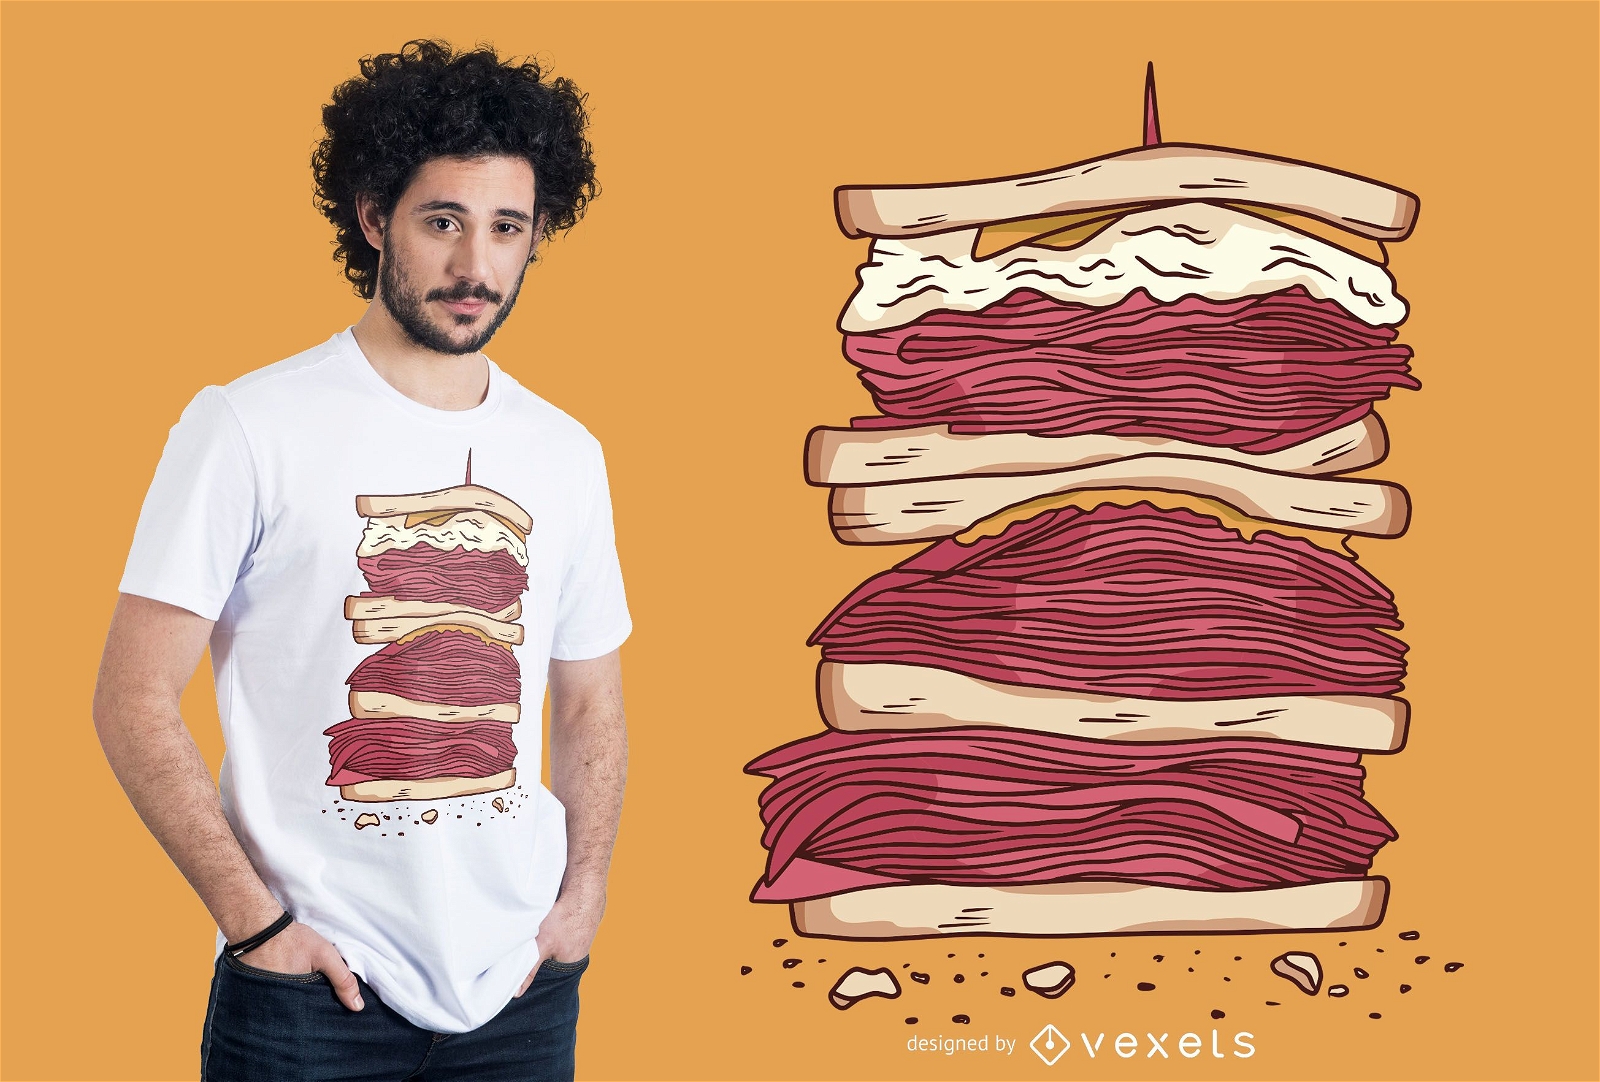 Dise?o de camiseta de sandwich de carne.